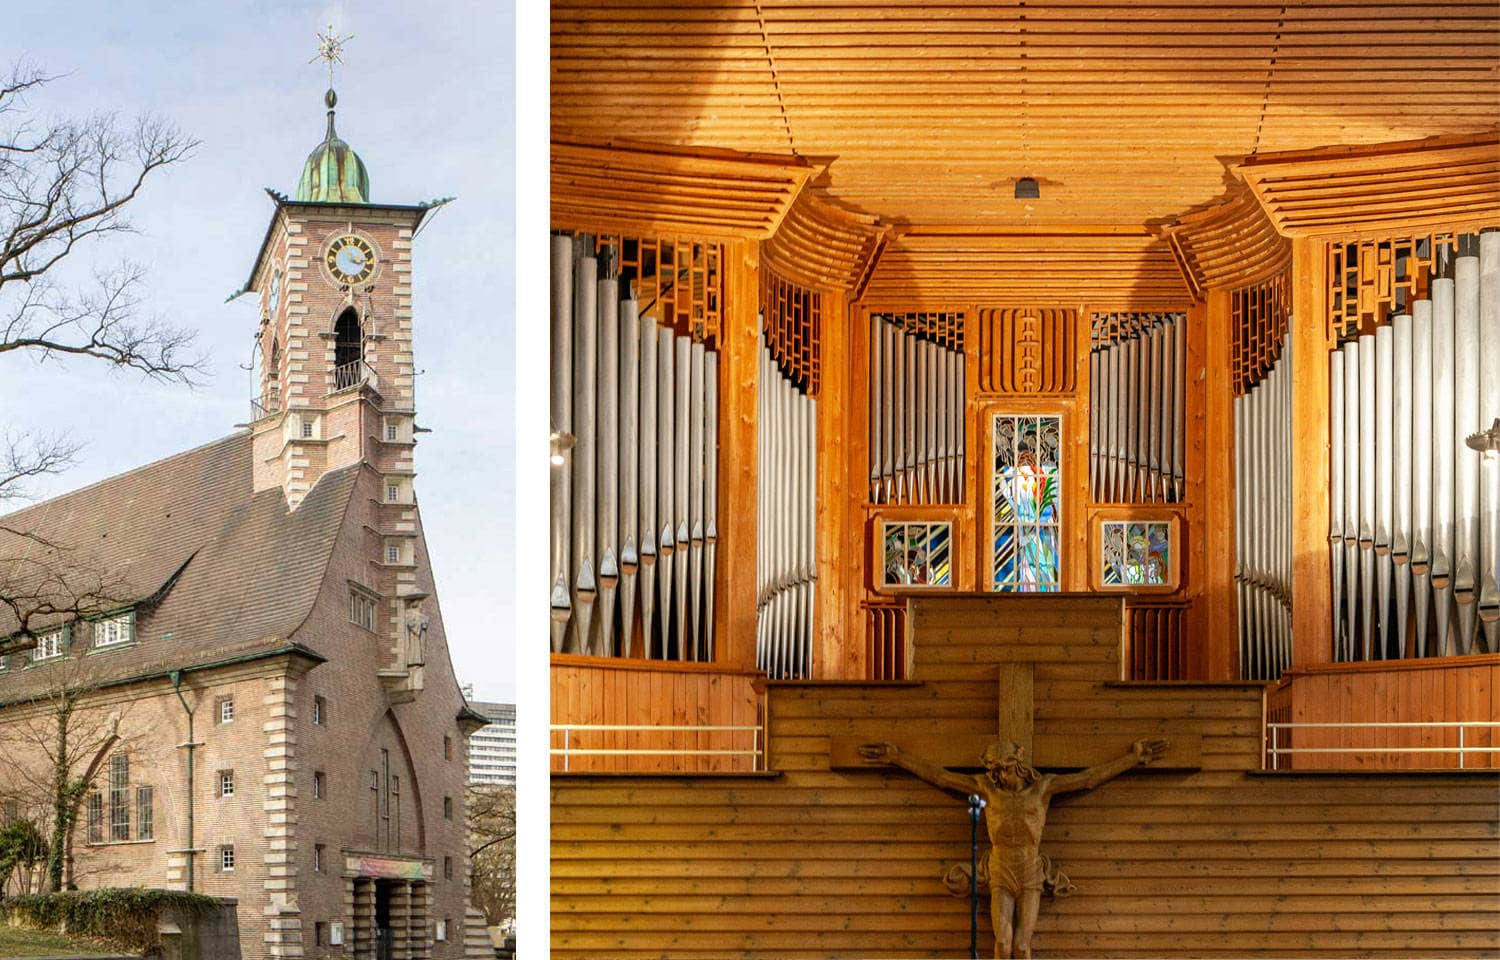 Außenansicht der Martin-Luther-Kirche mit Kirchturm, danaben eine Innenaufnahme der Orgel